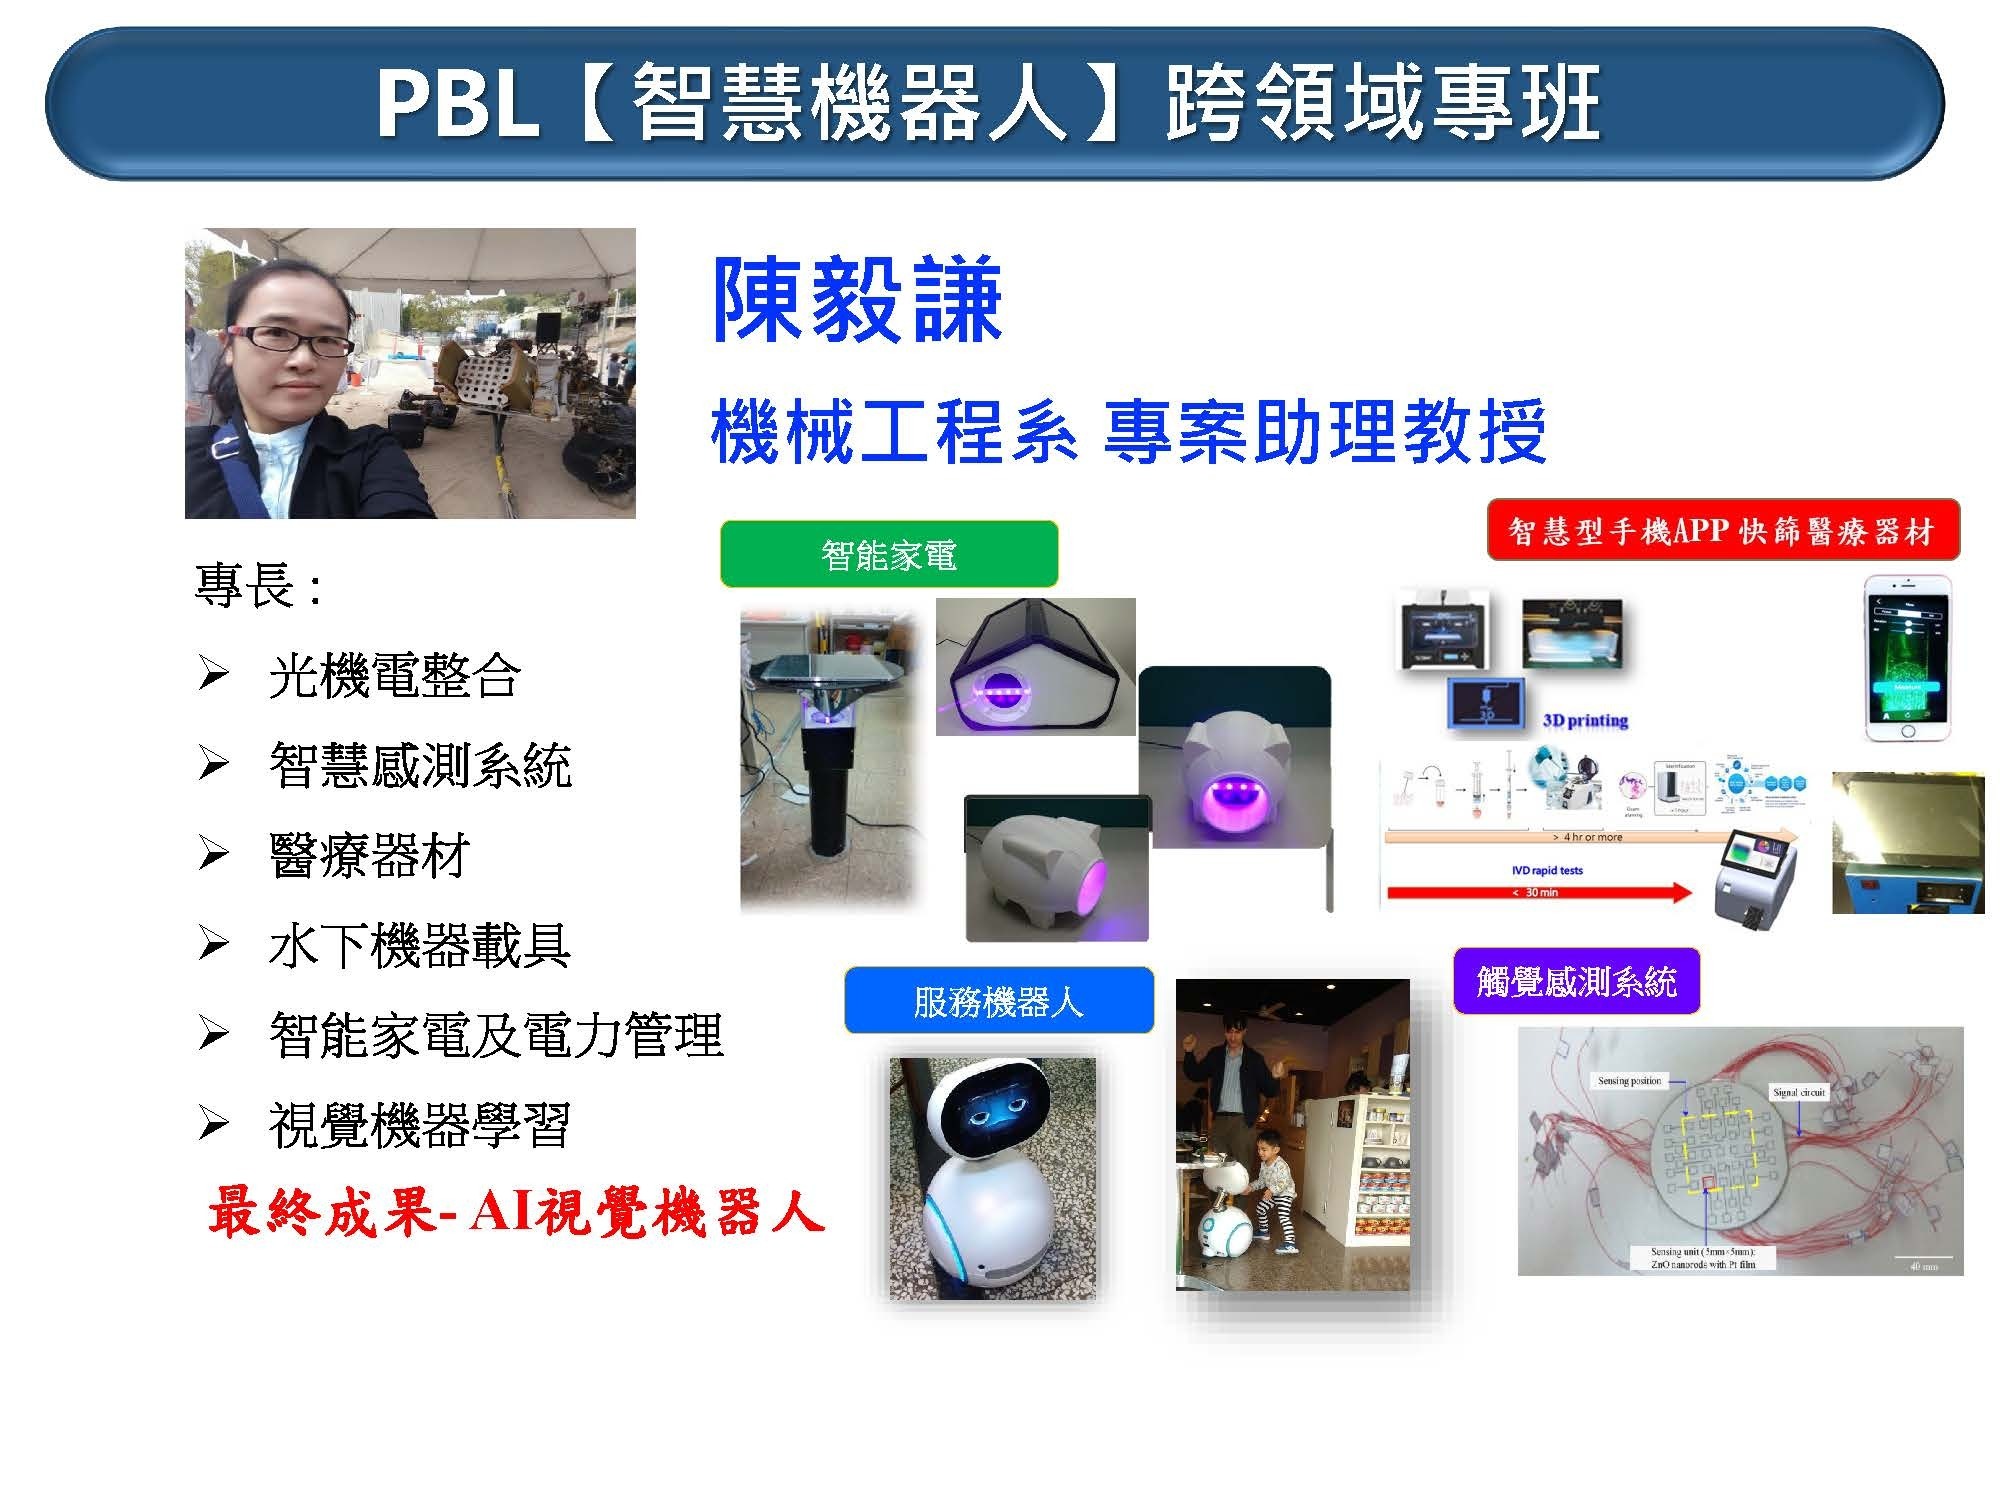 PBL(智慧機器人)跨領域專班指導老師陳毅謙簡介示意圖